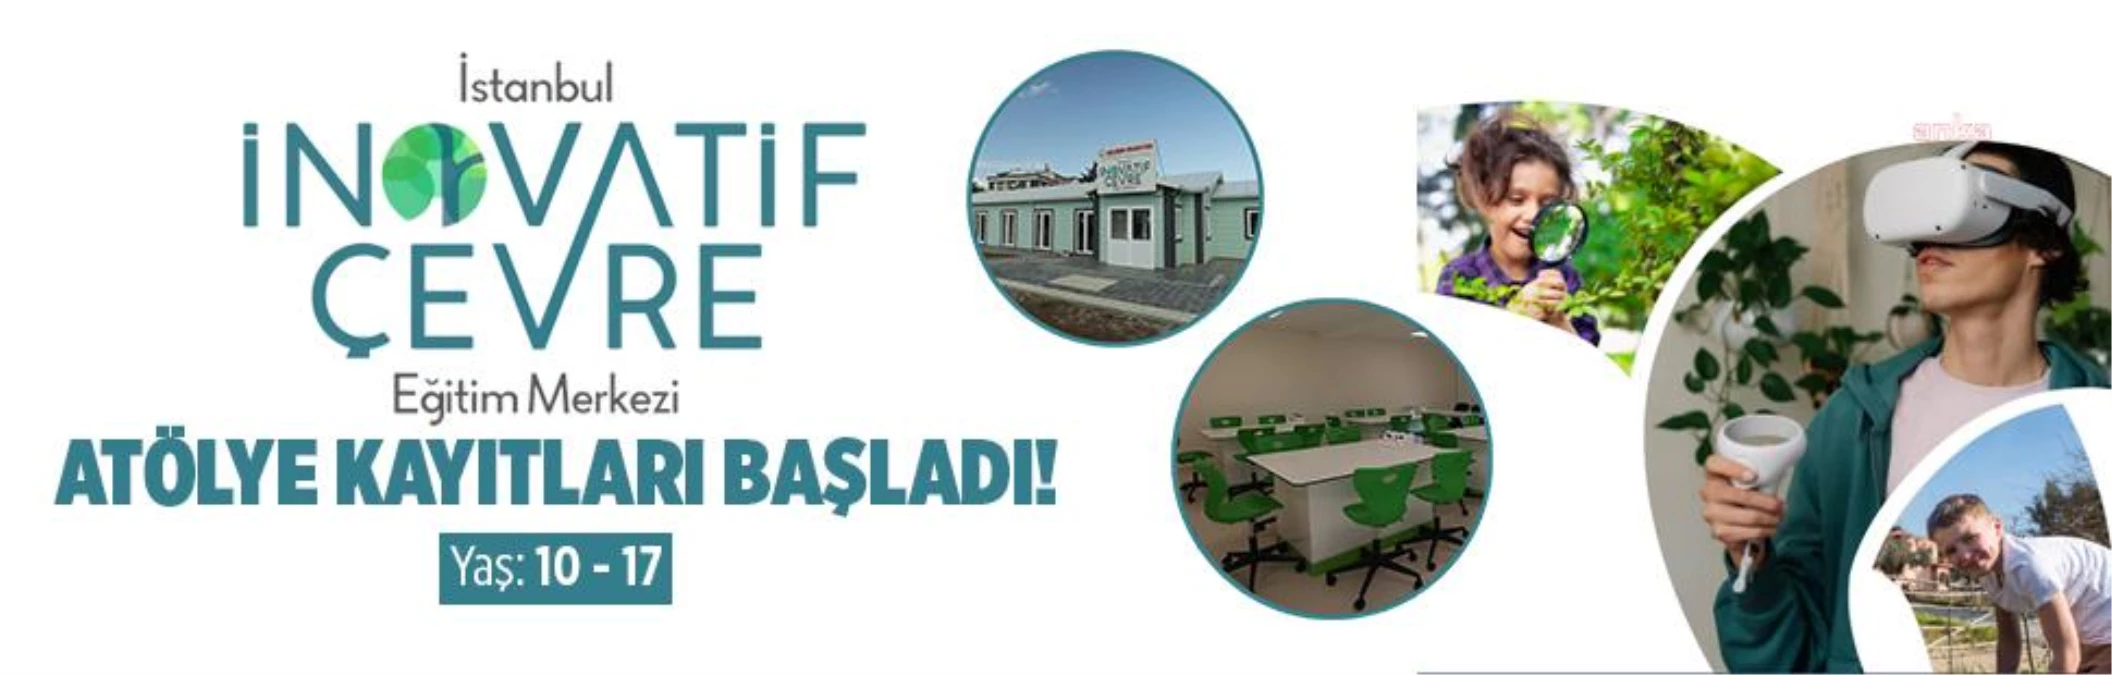 İstanbul İnovatif Çevre Eğitim Merkezi’nde Atölye Kayıtları Başladı